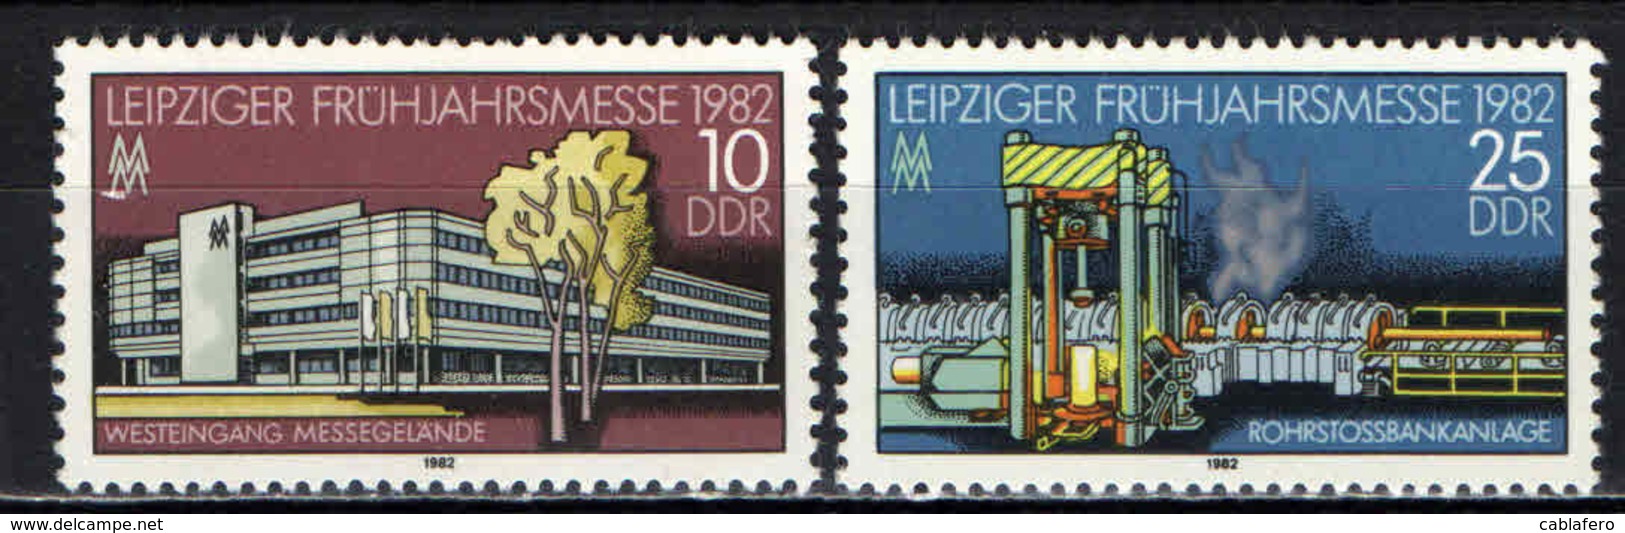 DDR - 1982 - FIERA PRIMAVERILE DI LIPSIA - MNH - Nuovi